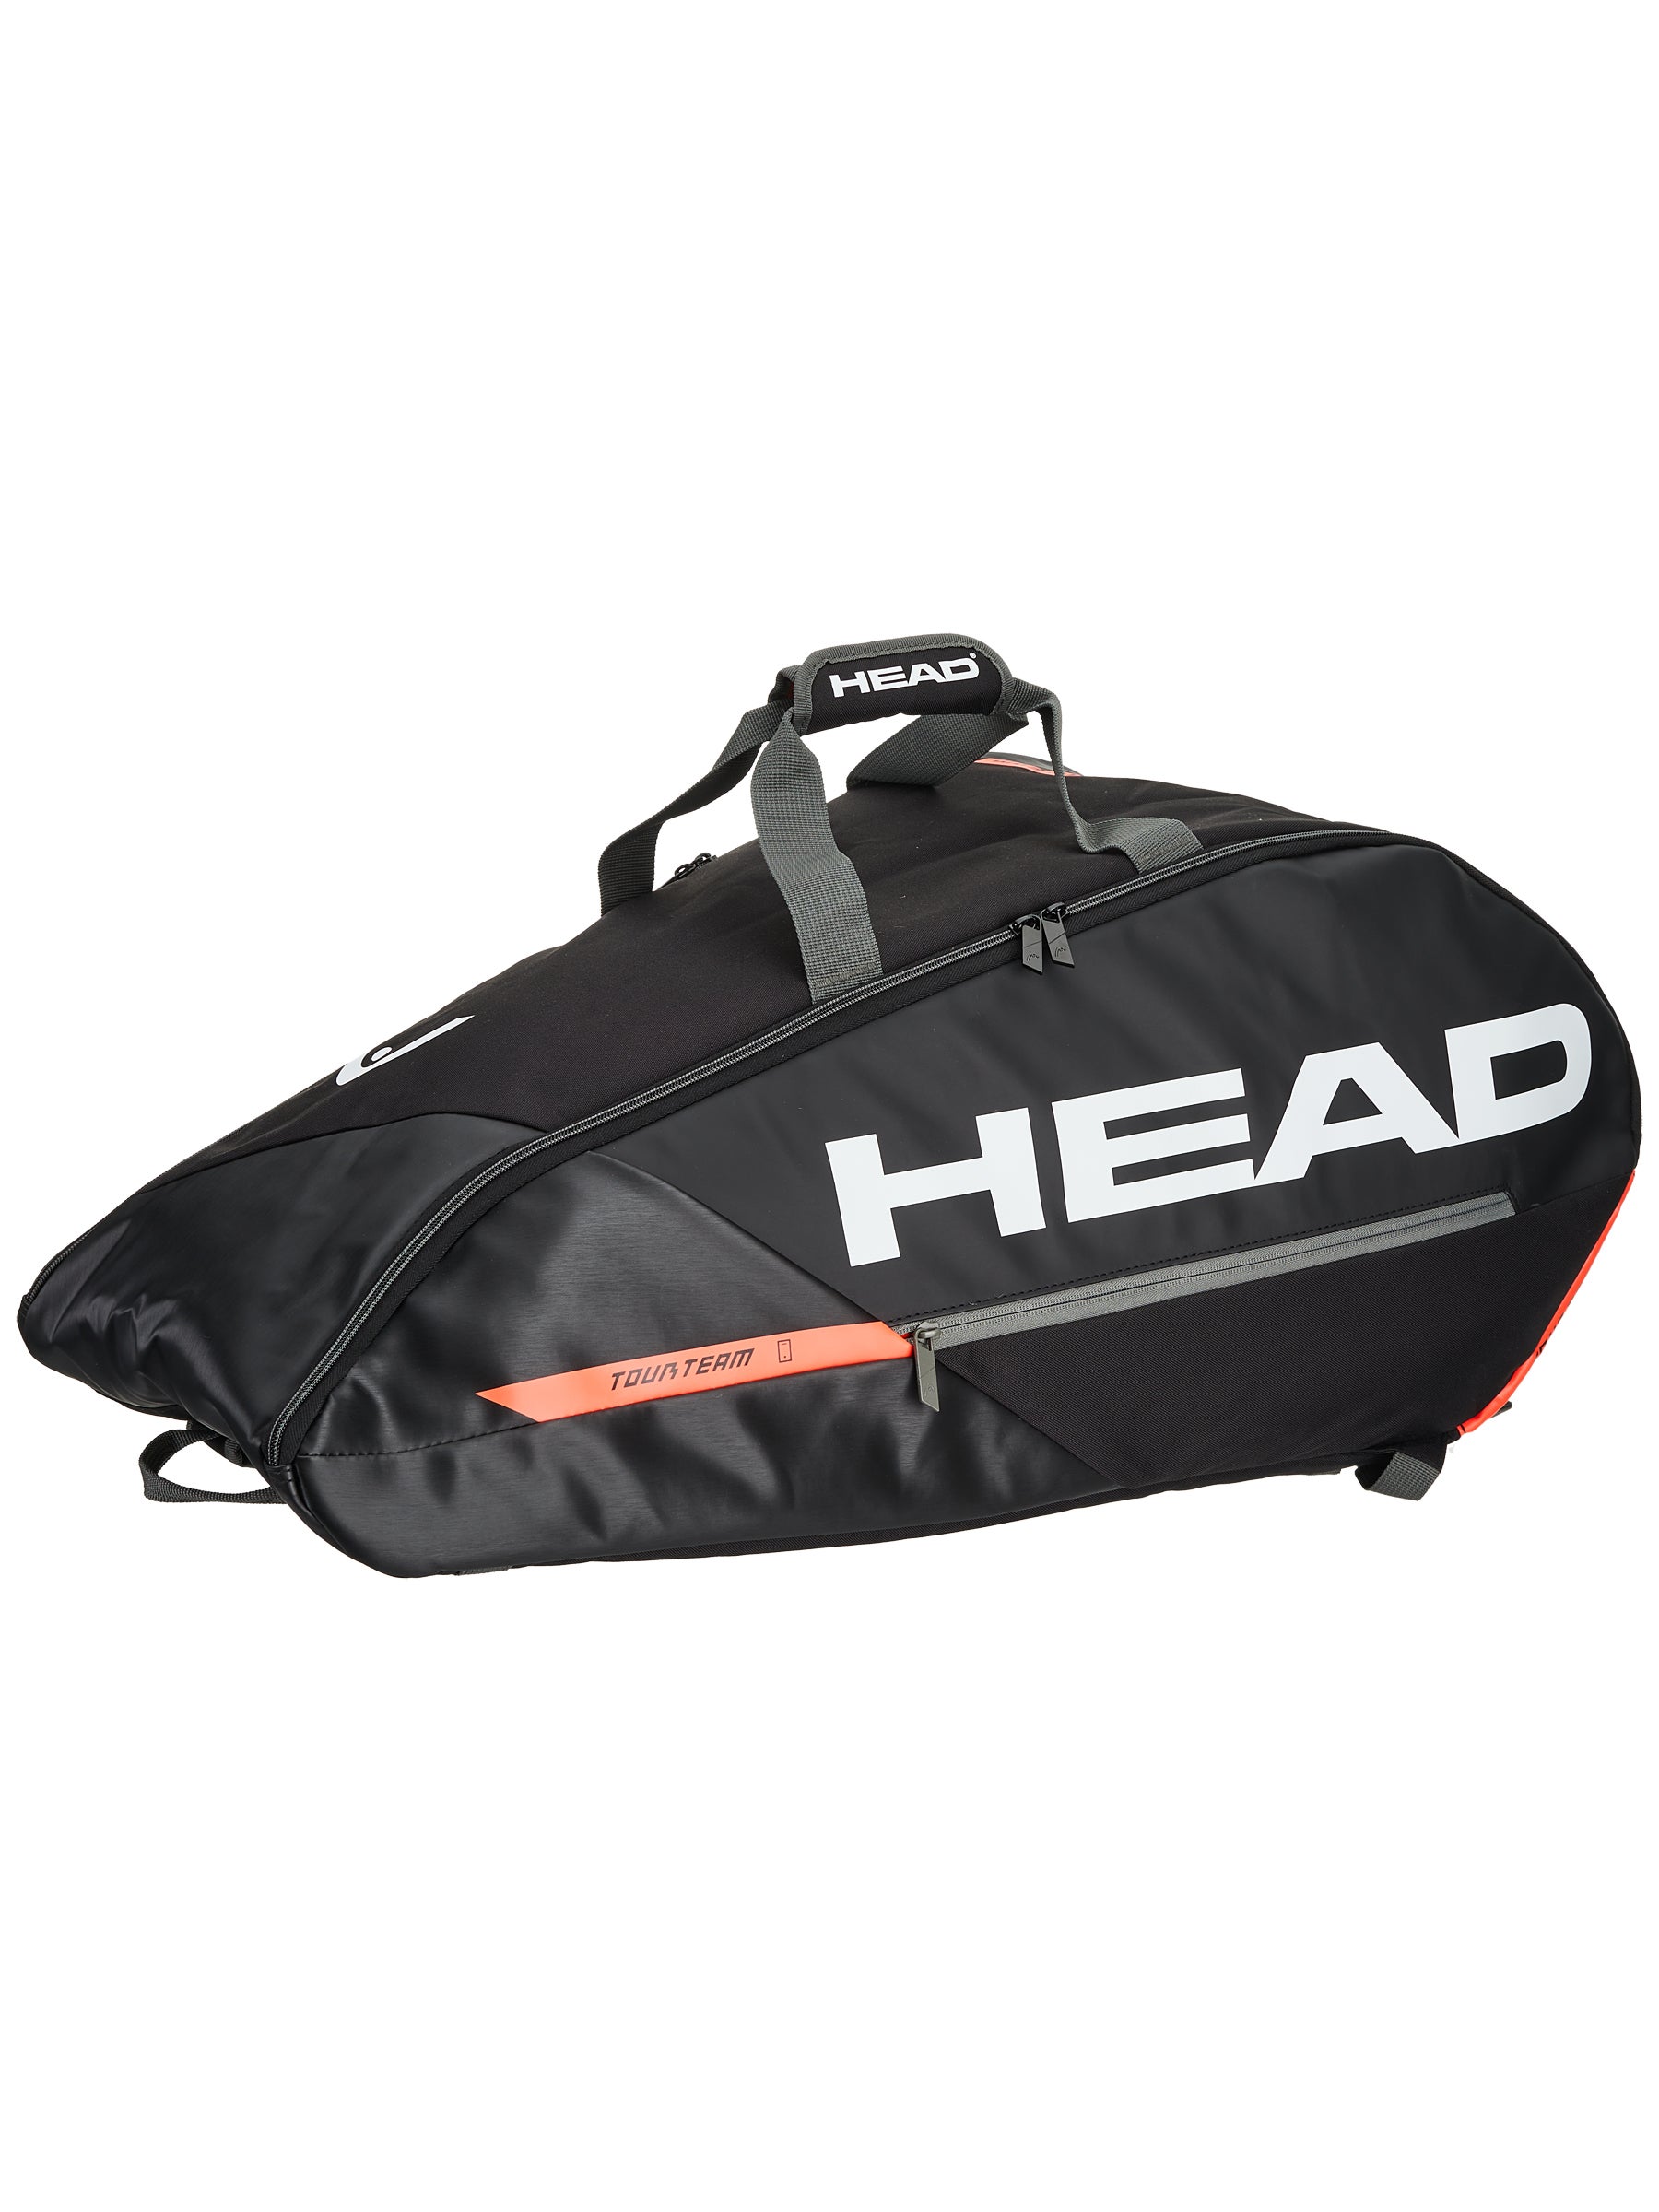 Reg $85 Black/White Head Tour Team 9R Supercombi Tennis Racquet Racket Bag 